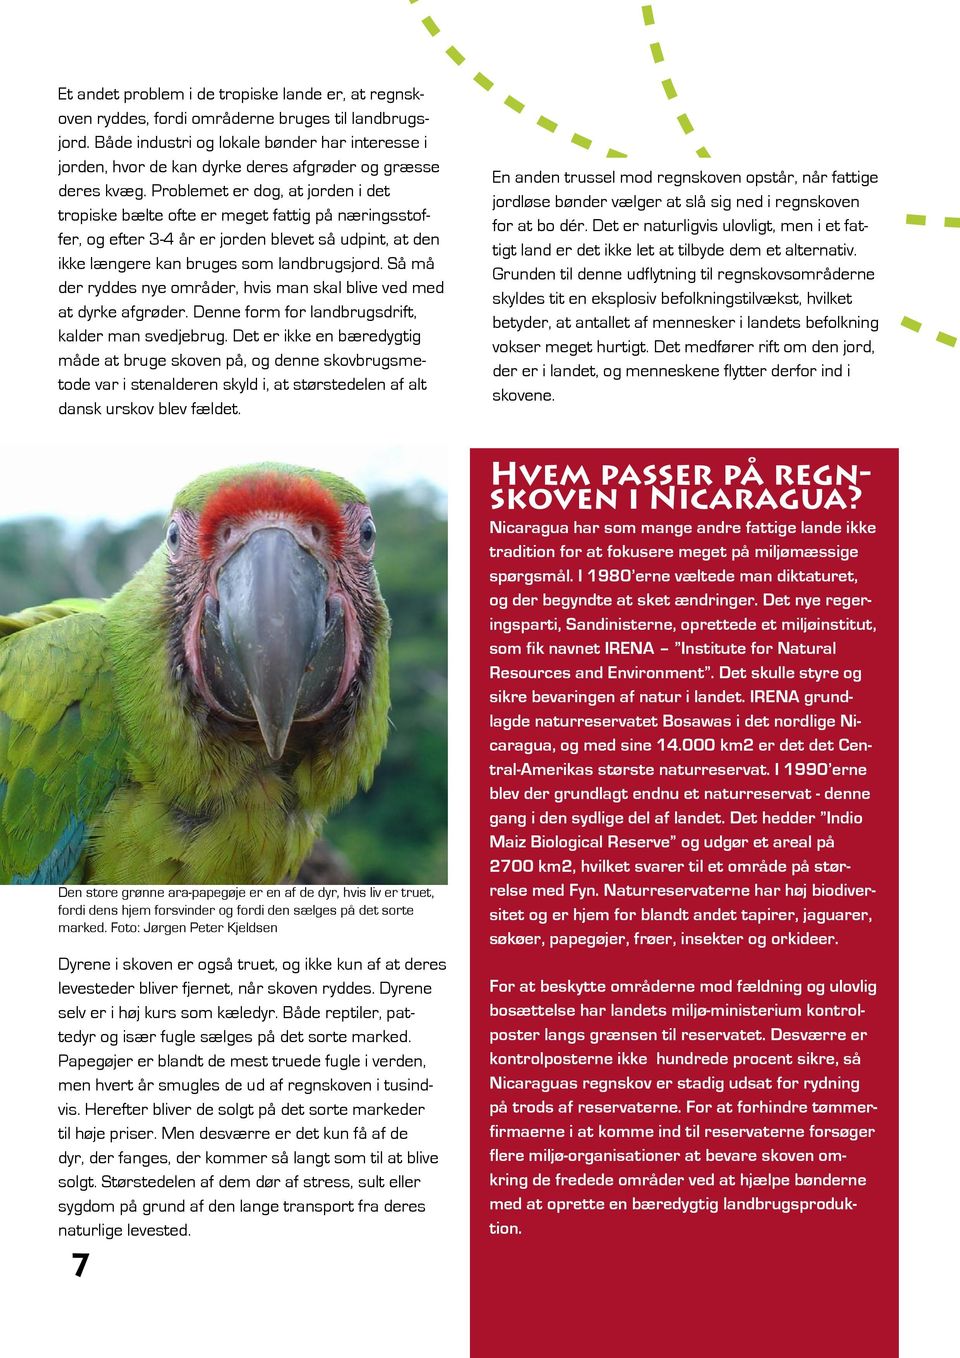 PAPEGØJE SAVNES UNDERVISNINGSMATERIALE KLASSE. Lær om Regnskoven Klimaer Ara-papegøjen  Bæredygtighed Fotosyntese Nicaragua - PDF Gratis download